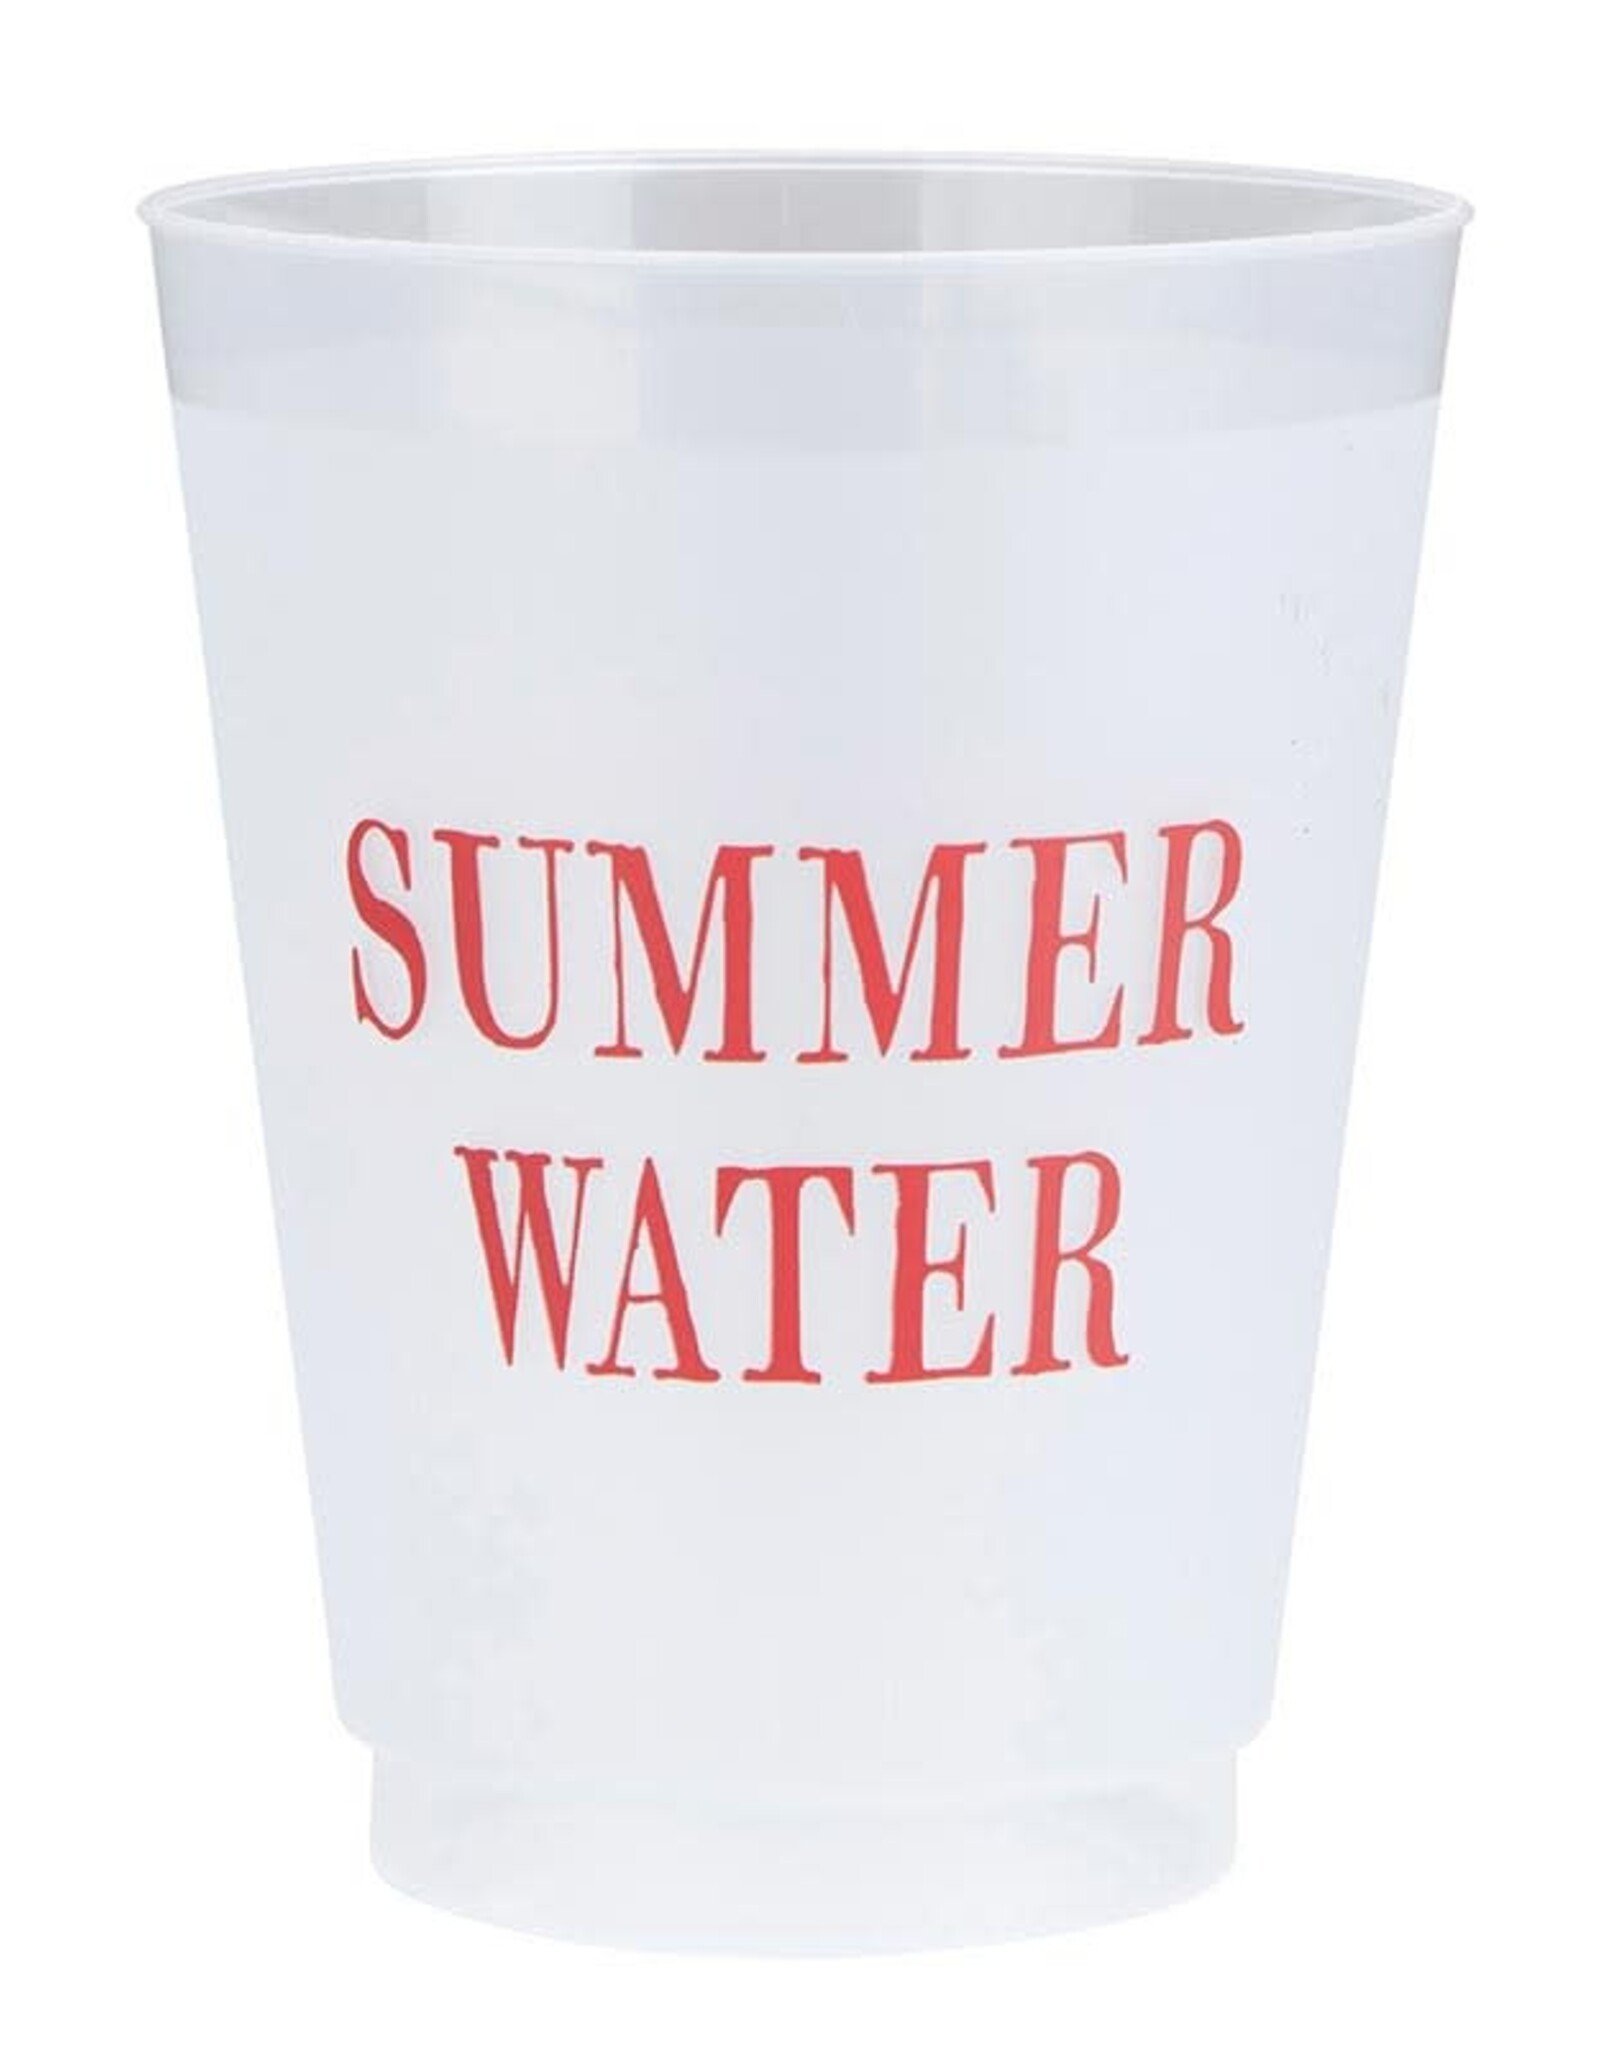 Summer Water Frost Flex Cups, 8pk